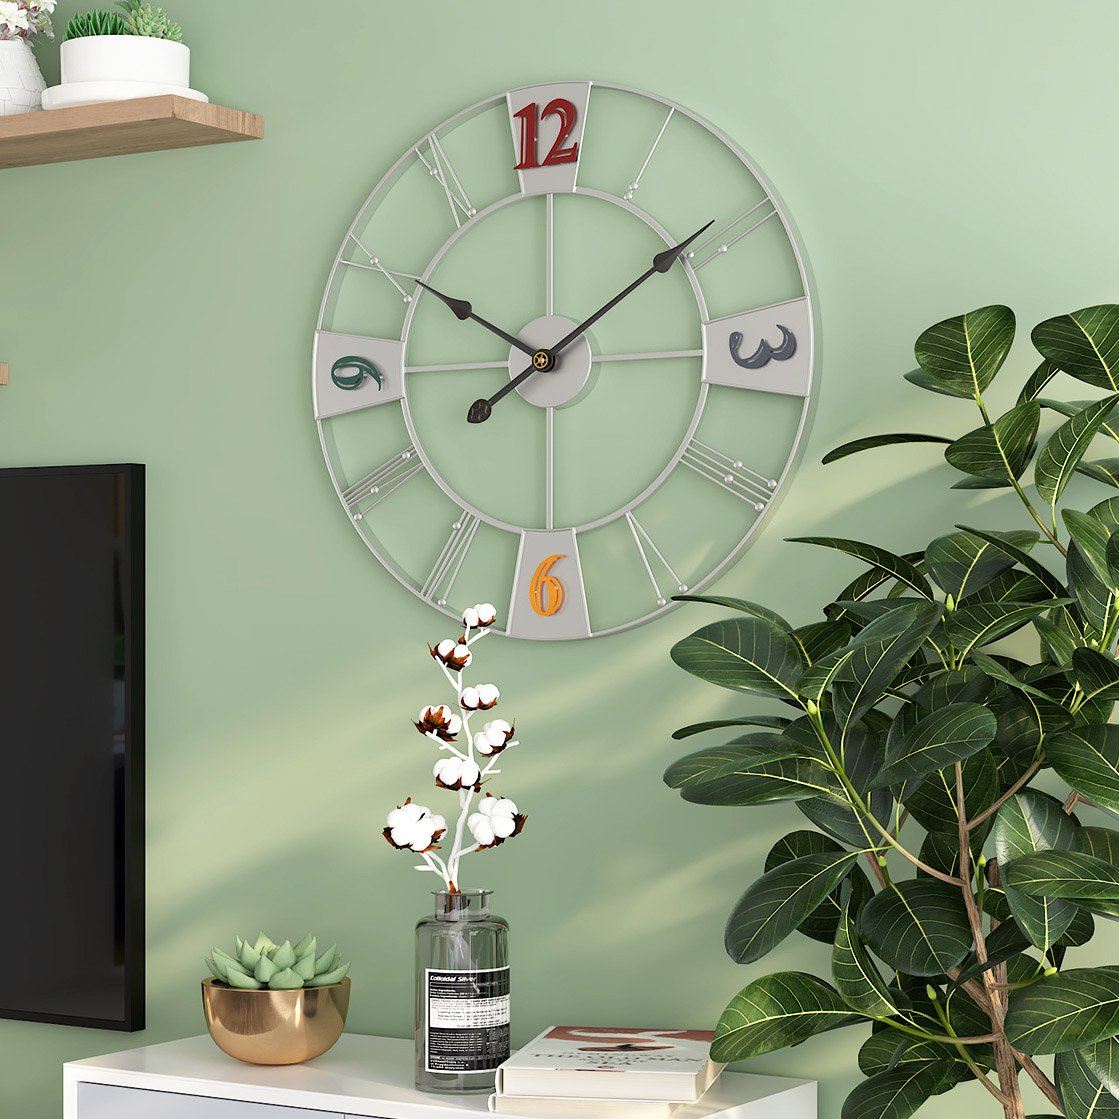 Large Creative Decorative Clock